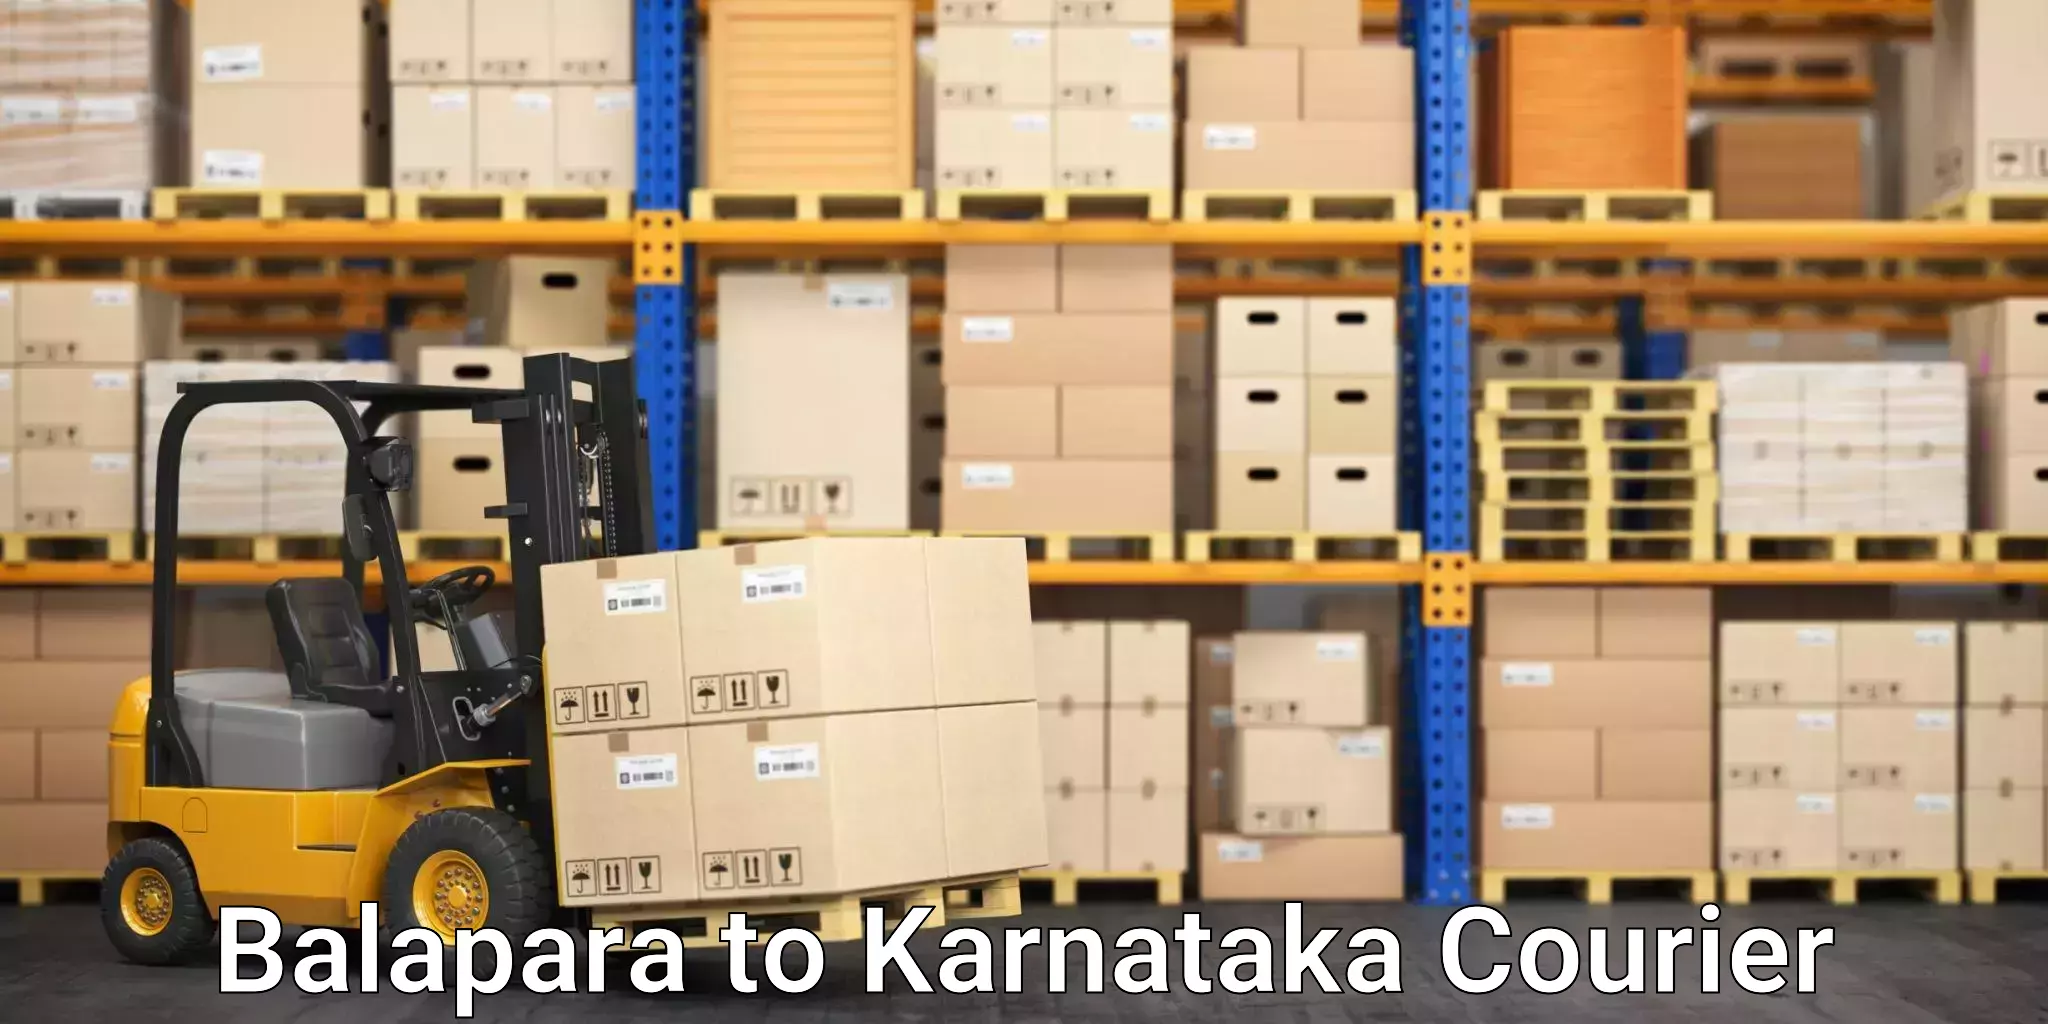 Reliable package handling Balapara to Chikkanayakanahalli